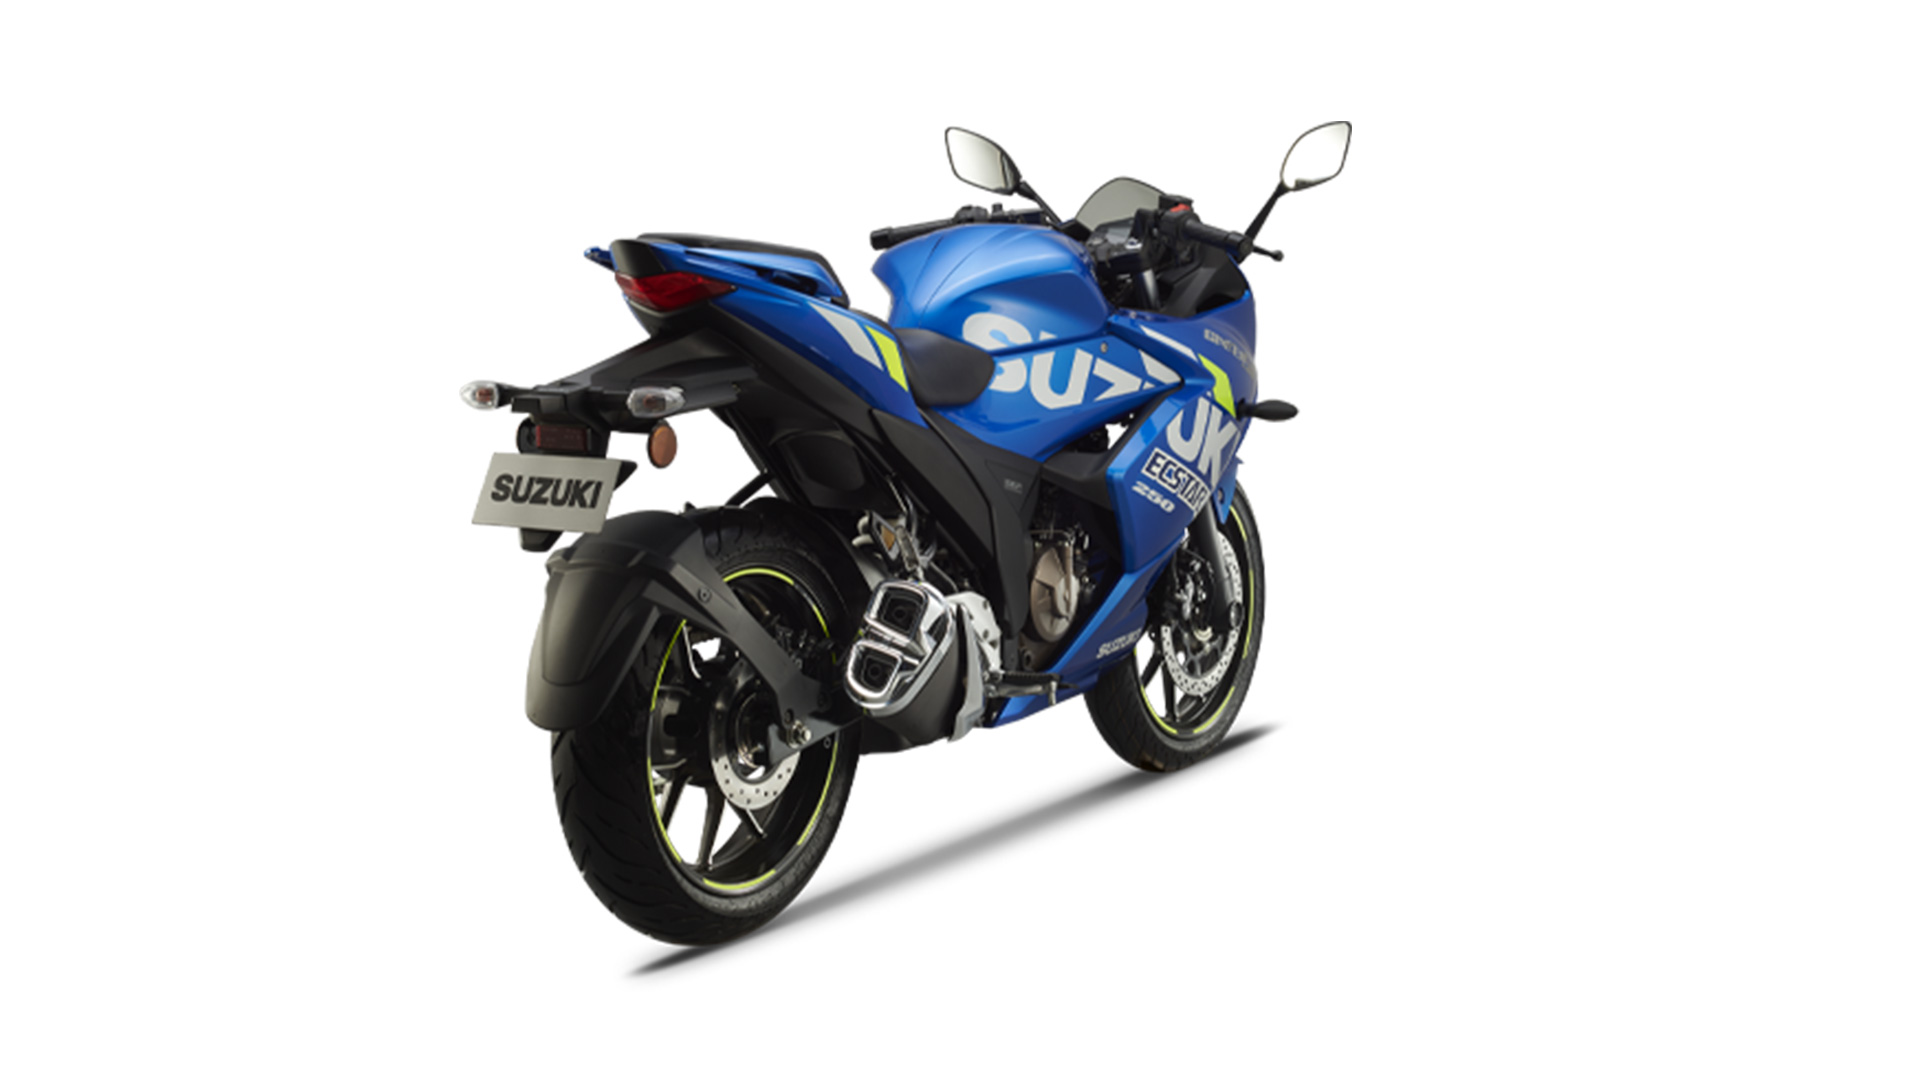 Suzuki Gixxer SF 250 2020 MotoGP Edition